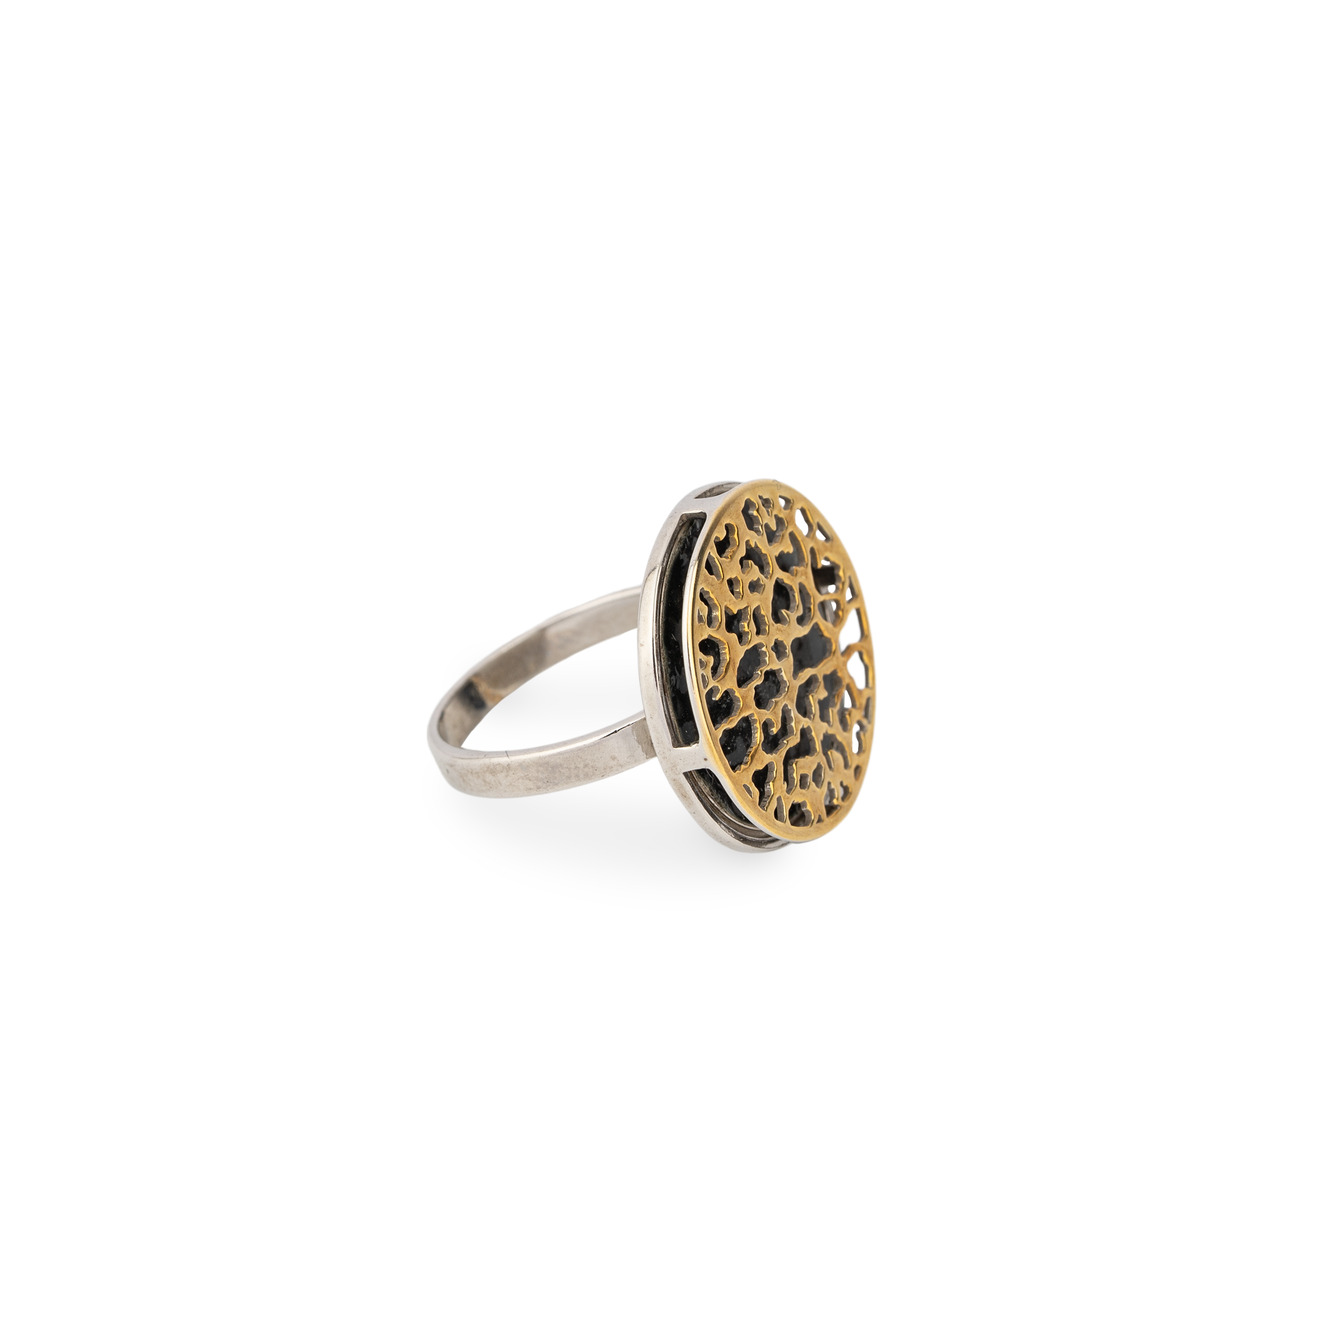 LUTA Jewelry Позолоченное кольцо из серебра c леопардовым узором luta jewelry позолоченное кольцо из серебра c леопардовым узором